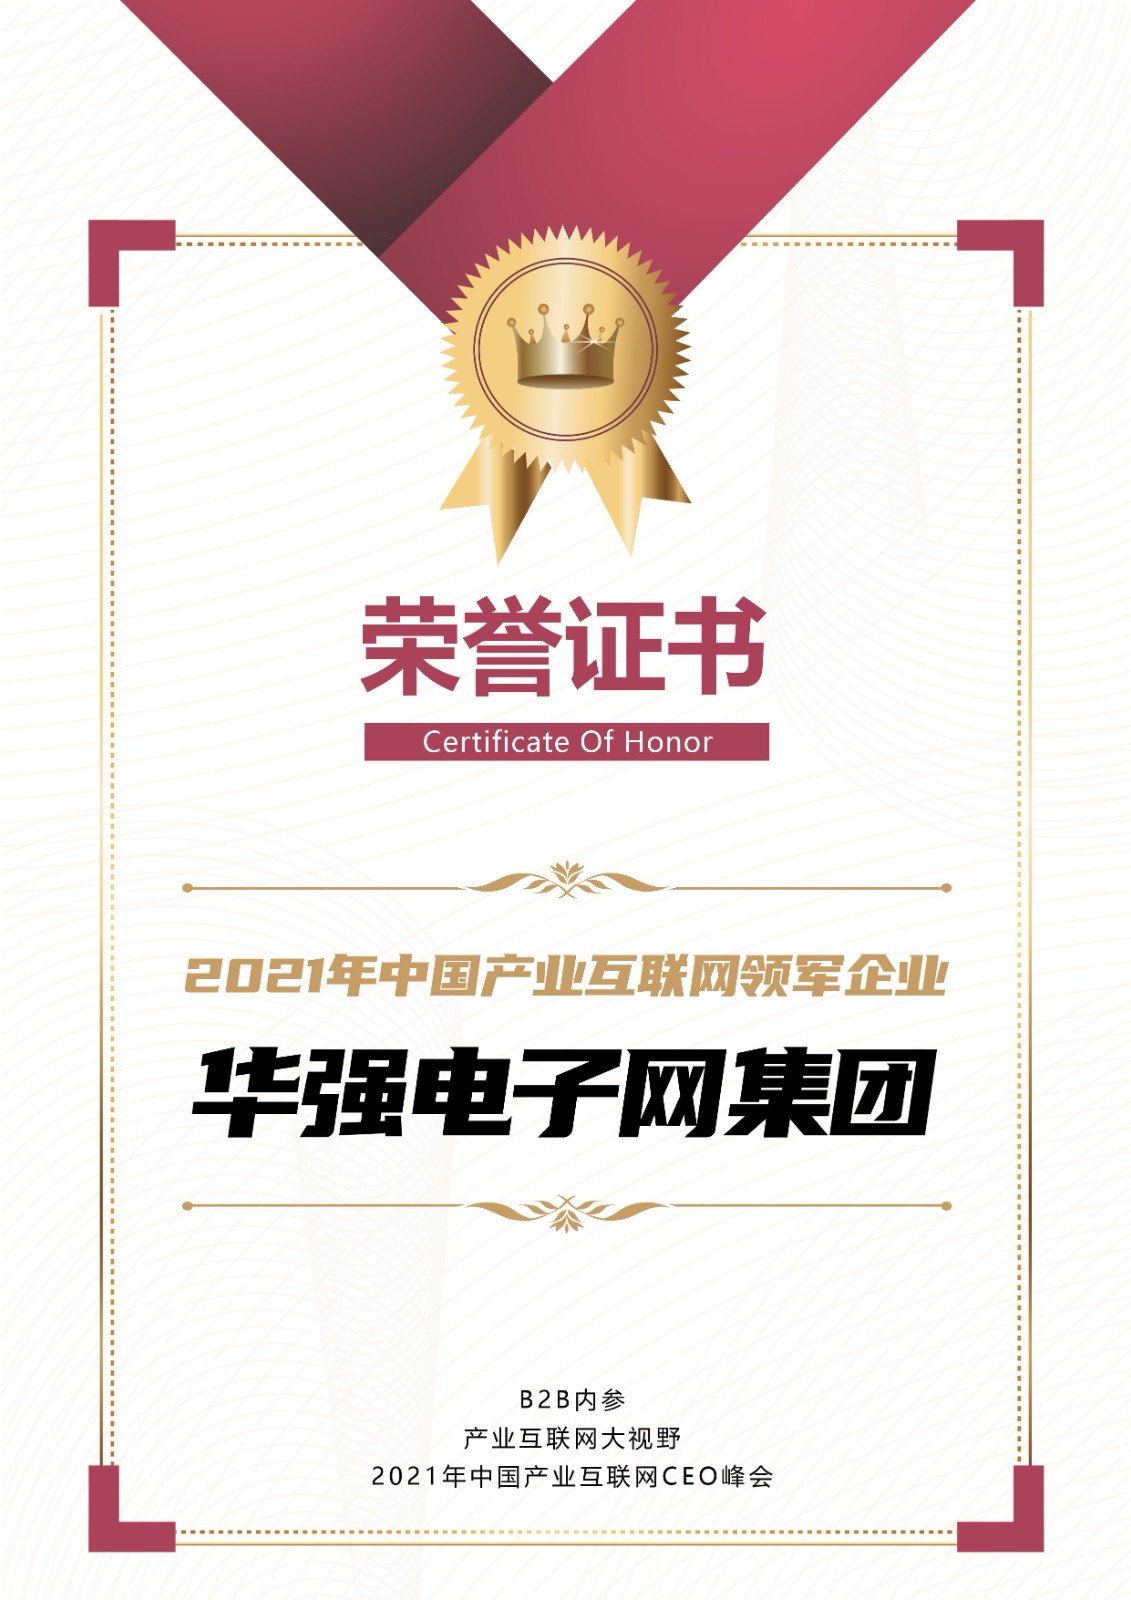 华强电子网集团荣膺“2021年中国产业互联网领军企业”荣誉证书